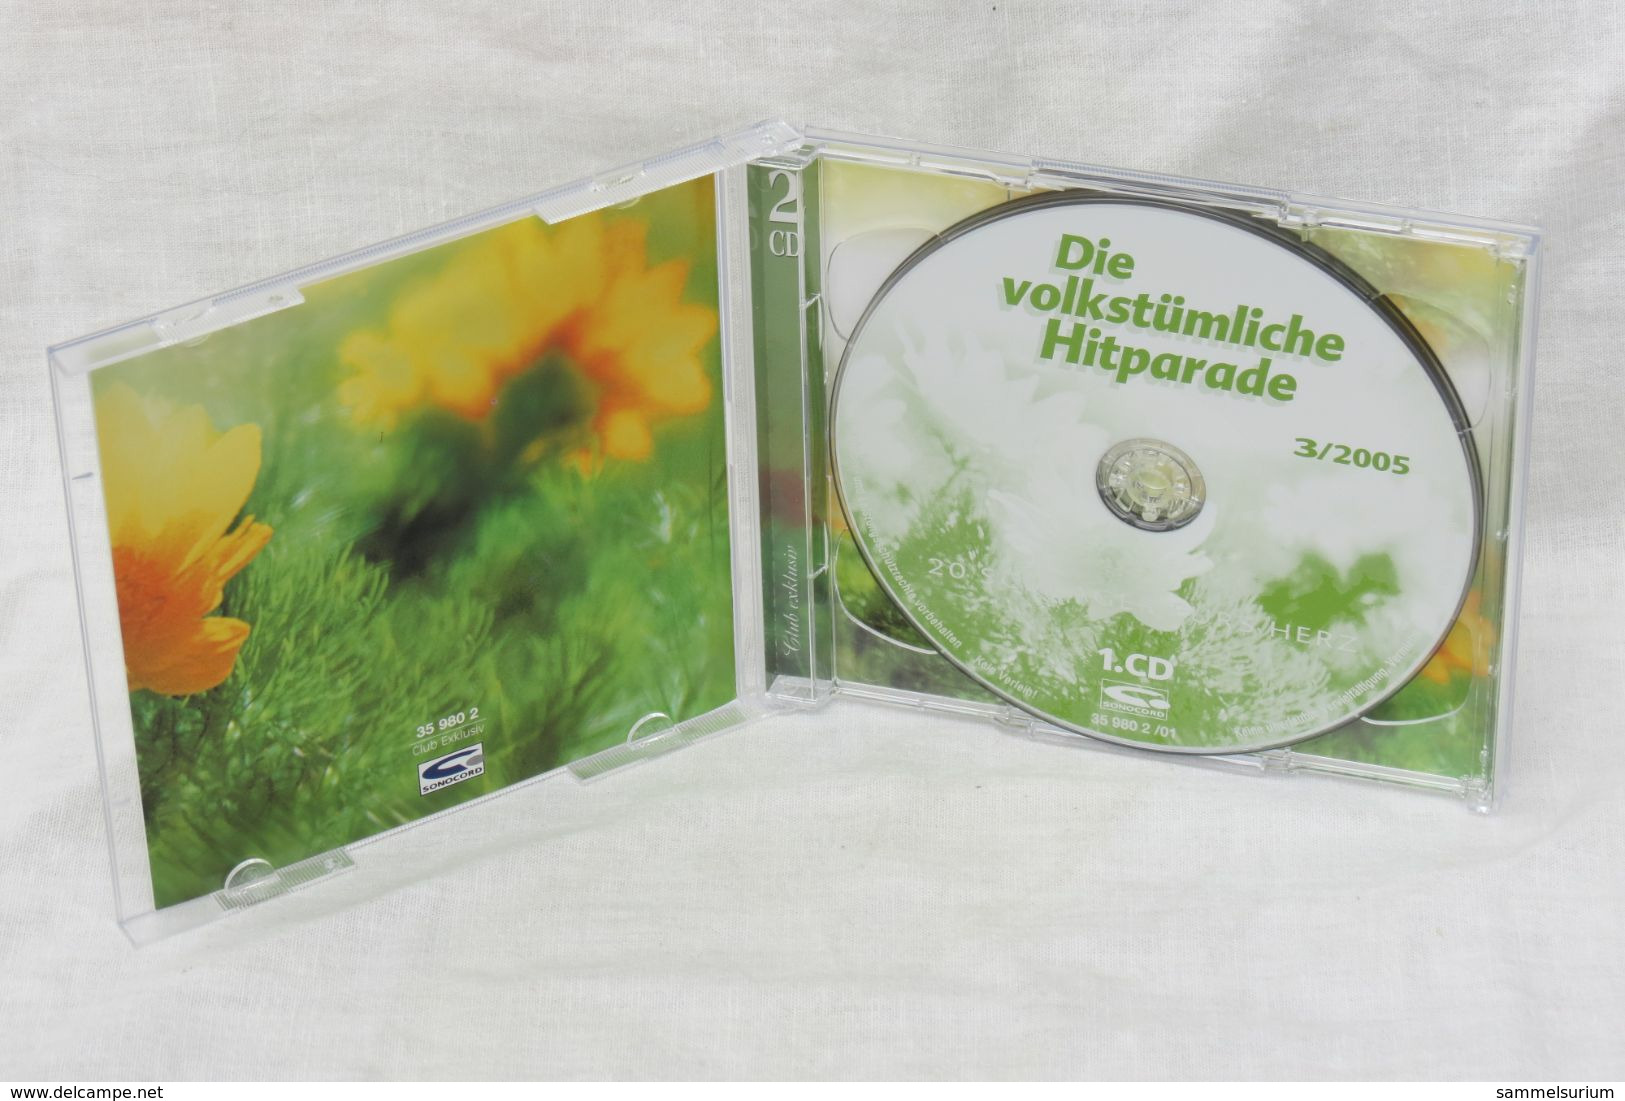 2 CDs "Die Volkstümliche Hitparade" 40 Schlager Fürs Herz, Ausgabe 3/2005 - Autres - Musique Allemande